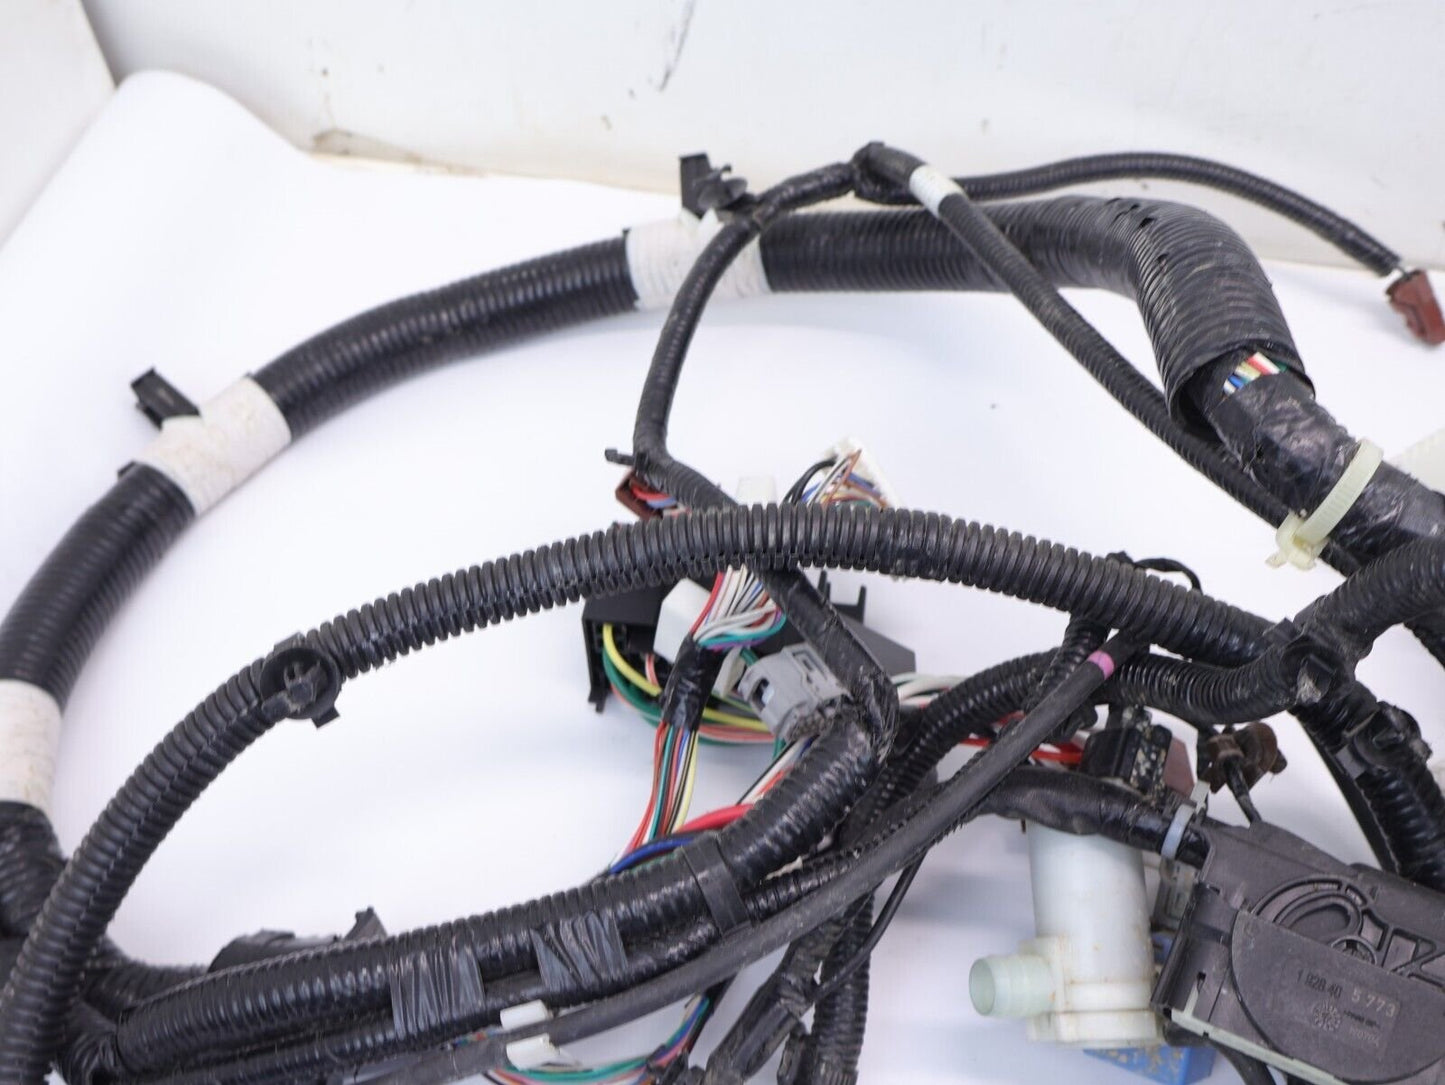 2019-2020 Subaru WRX Wiring Harness 81402VA731 Wire Bulk Bulkhead OEM